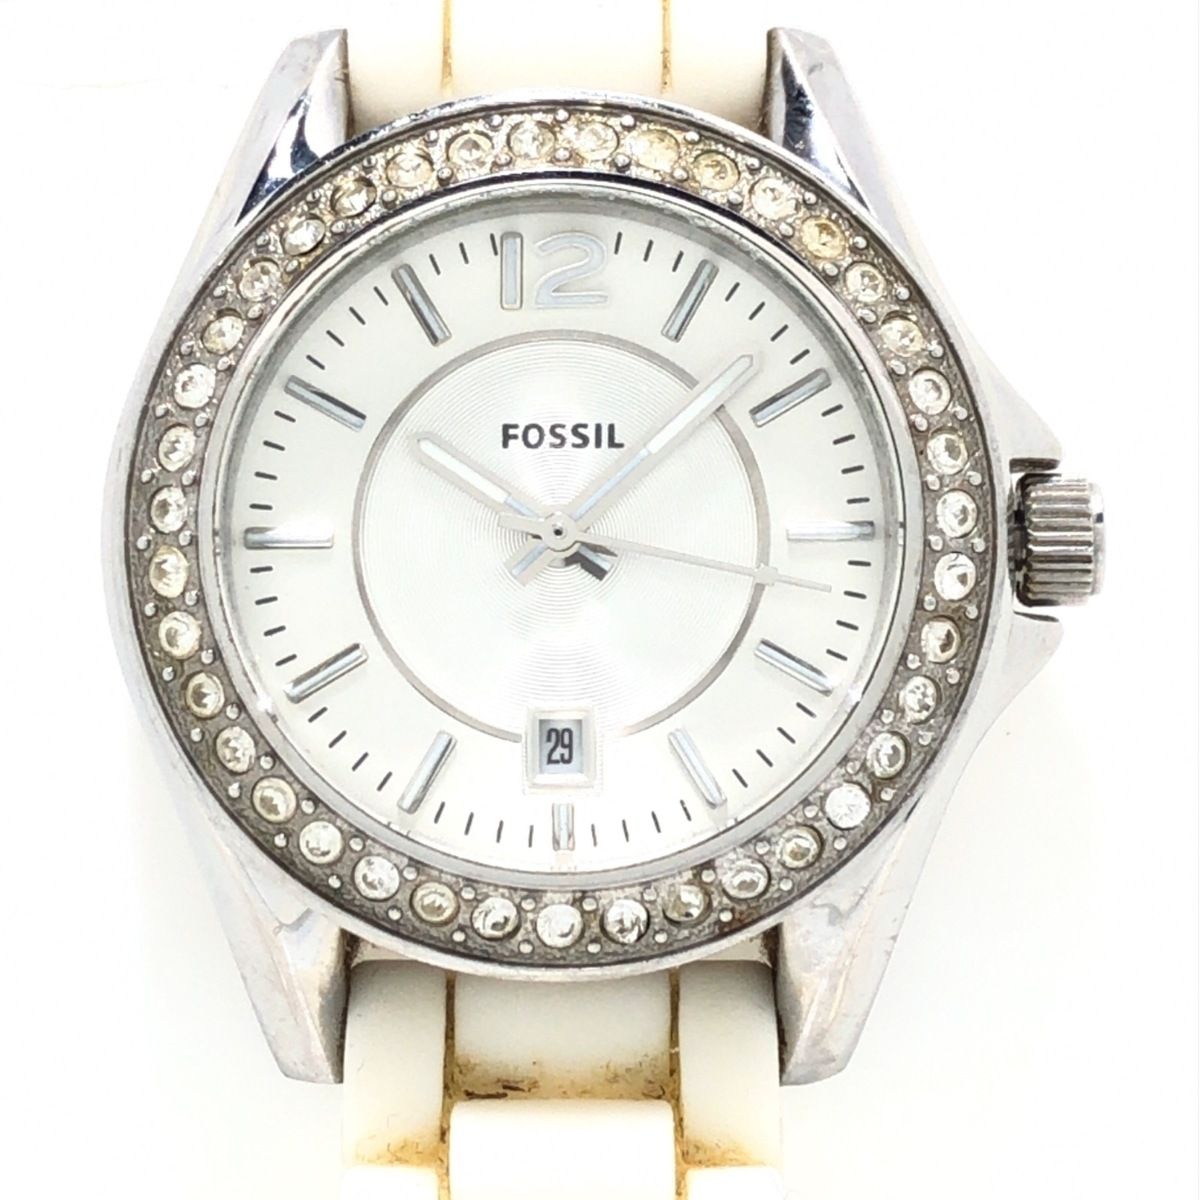 FOSSIL(フォッシル) 腕時計 - ES-2878 レディース ラインストーン